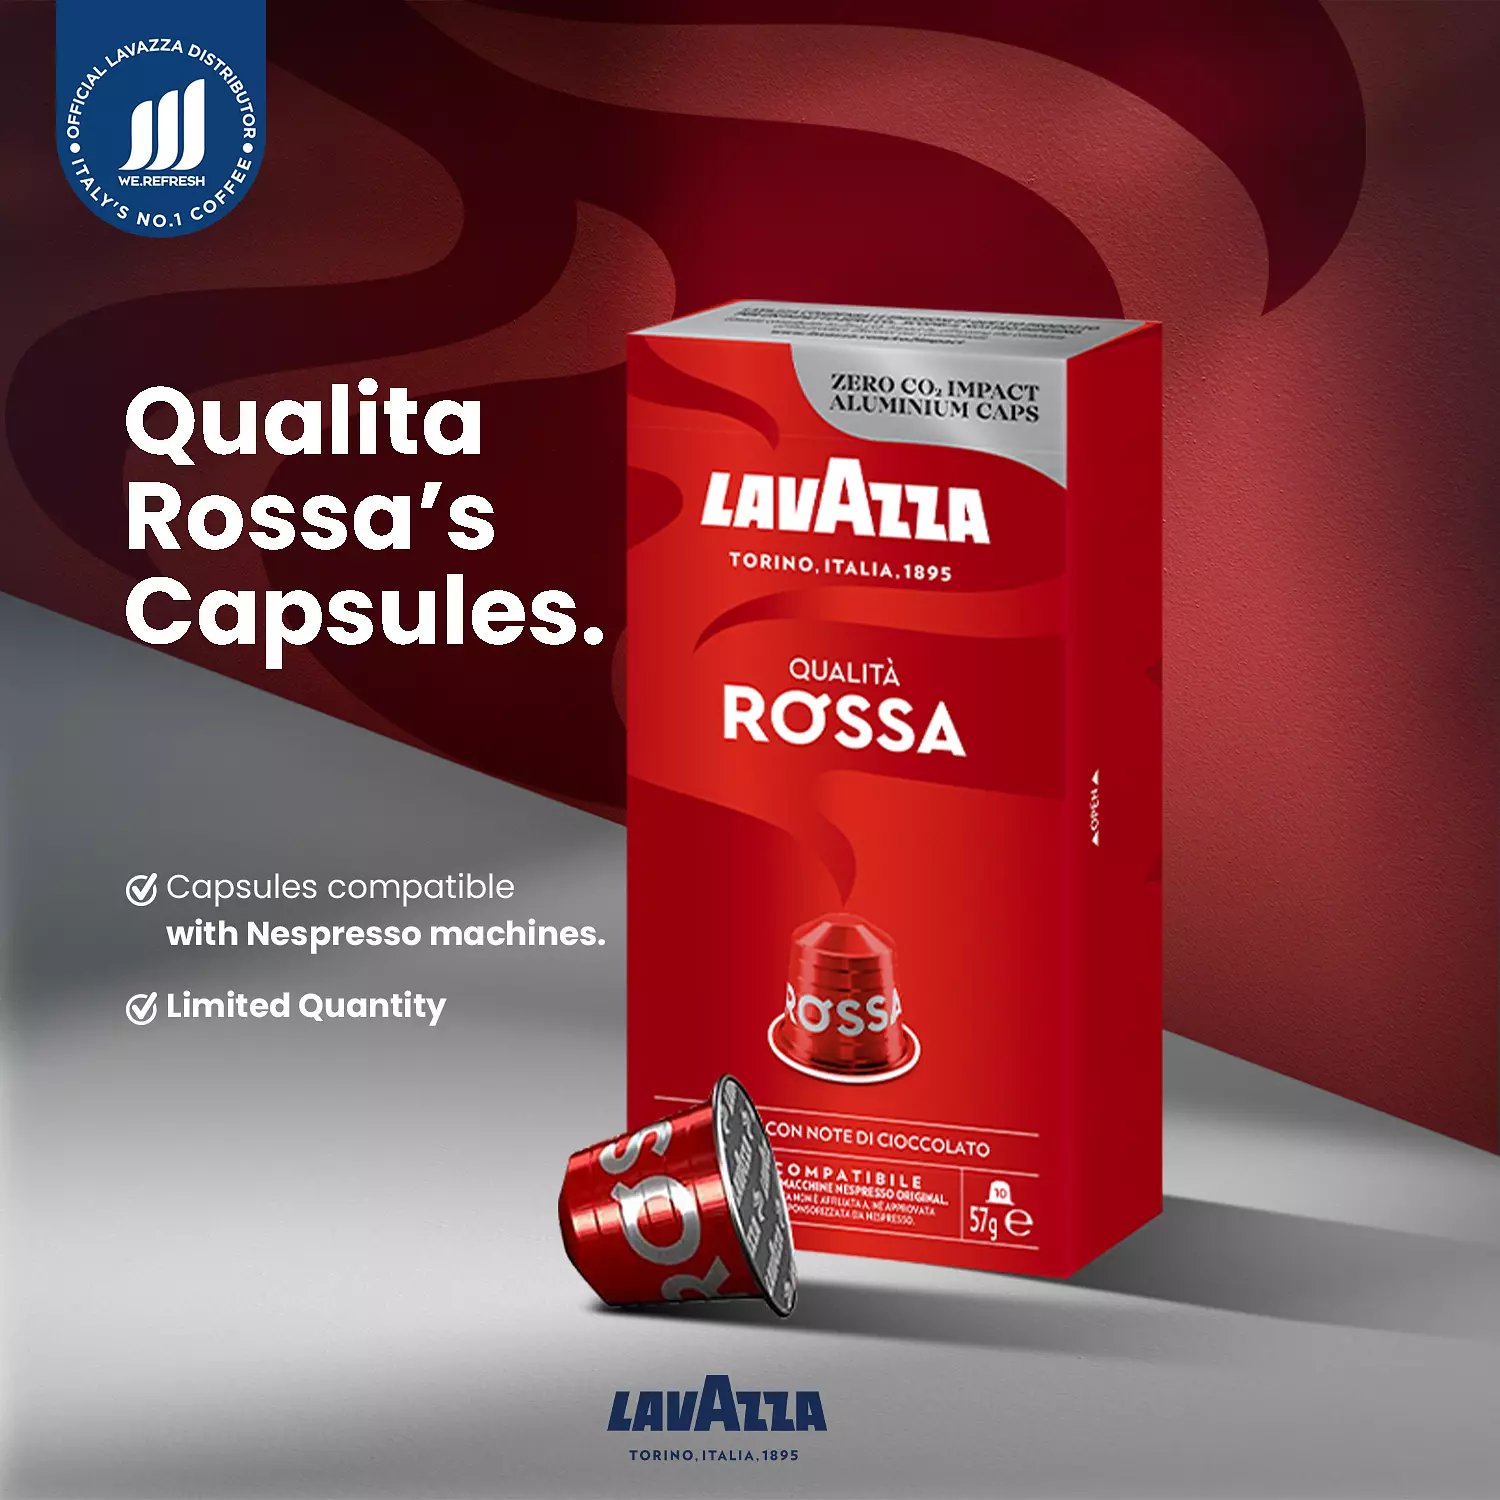   Qualita Rossa Ncc 10 Capsules Intensity 10 hover image